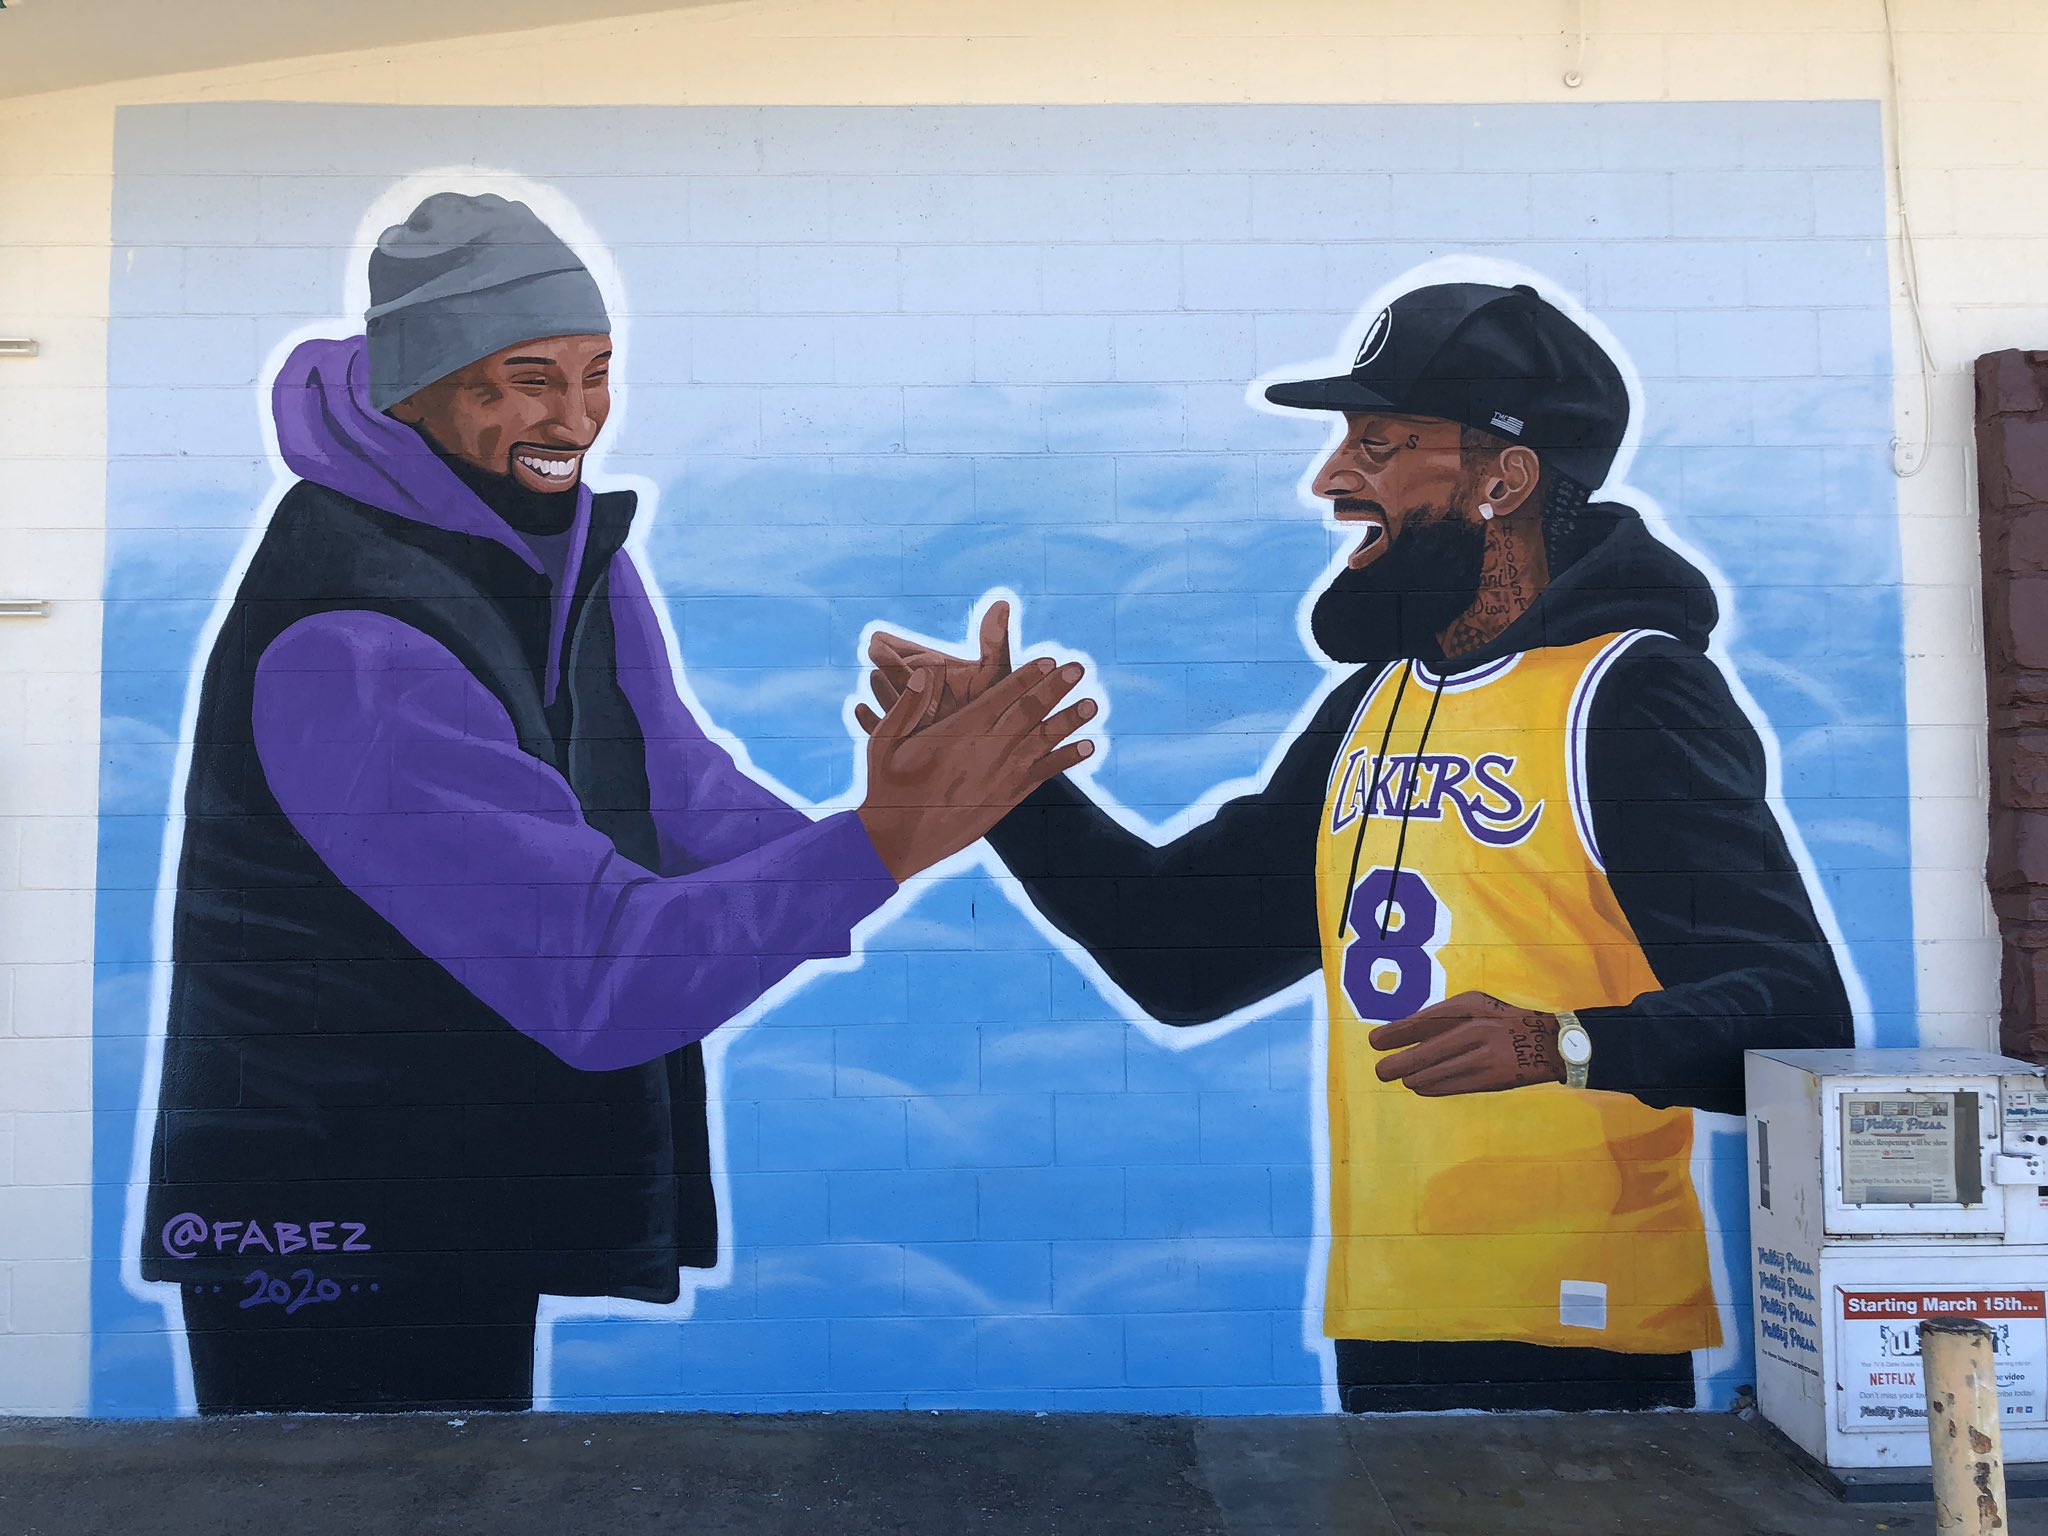 Kobe & Gianna Bryant Murals on X: "Newest Kobe Nipsey mural in Lancaster 🎨  @ fabez 📍43636 10th St W, Lancaster #RIPKobe https://t.co/4oM0rNTTyA" / X